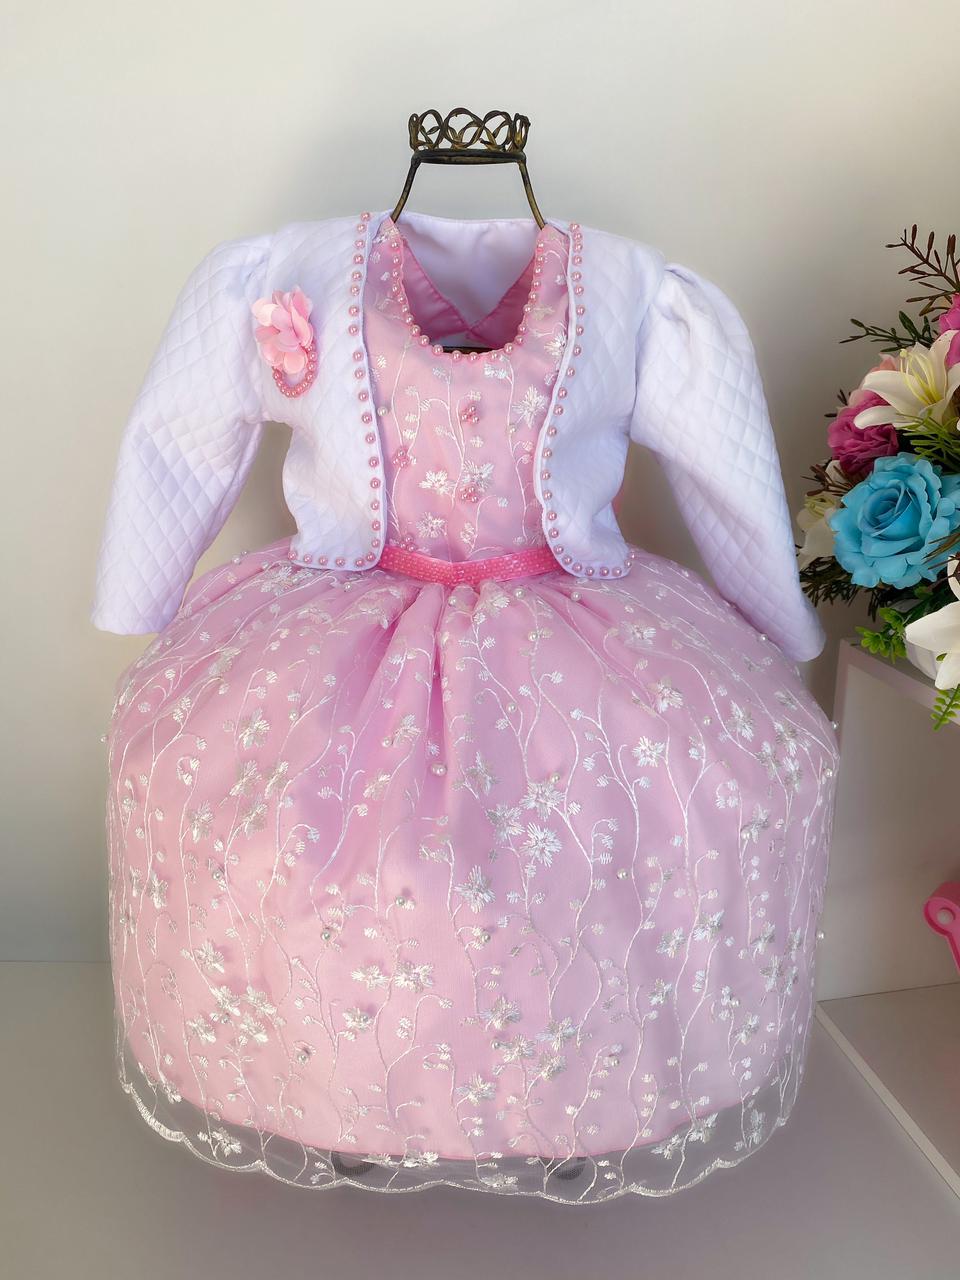 Vestido Infantil Rosa com Bolero Bordado em Pérolas Barrado Renda